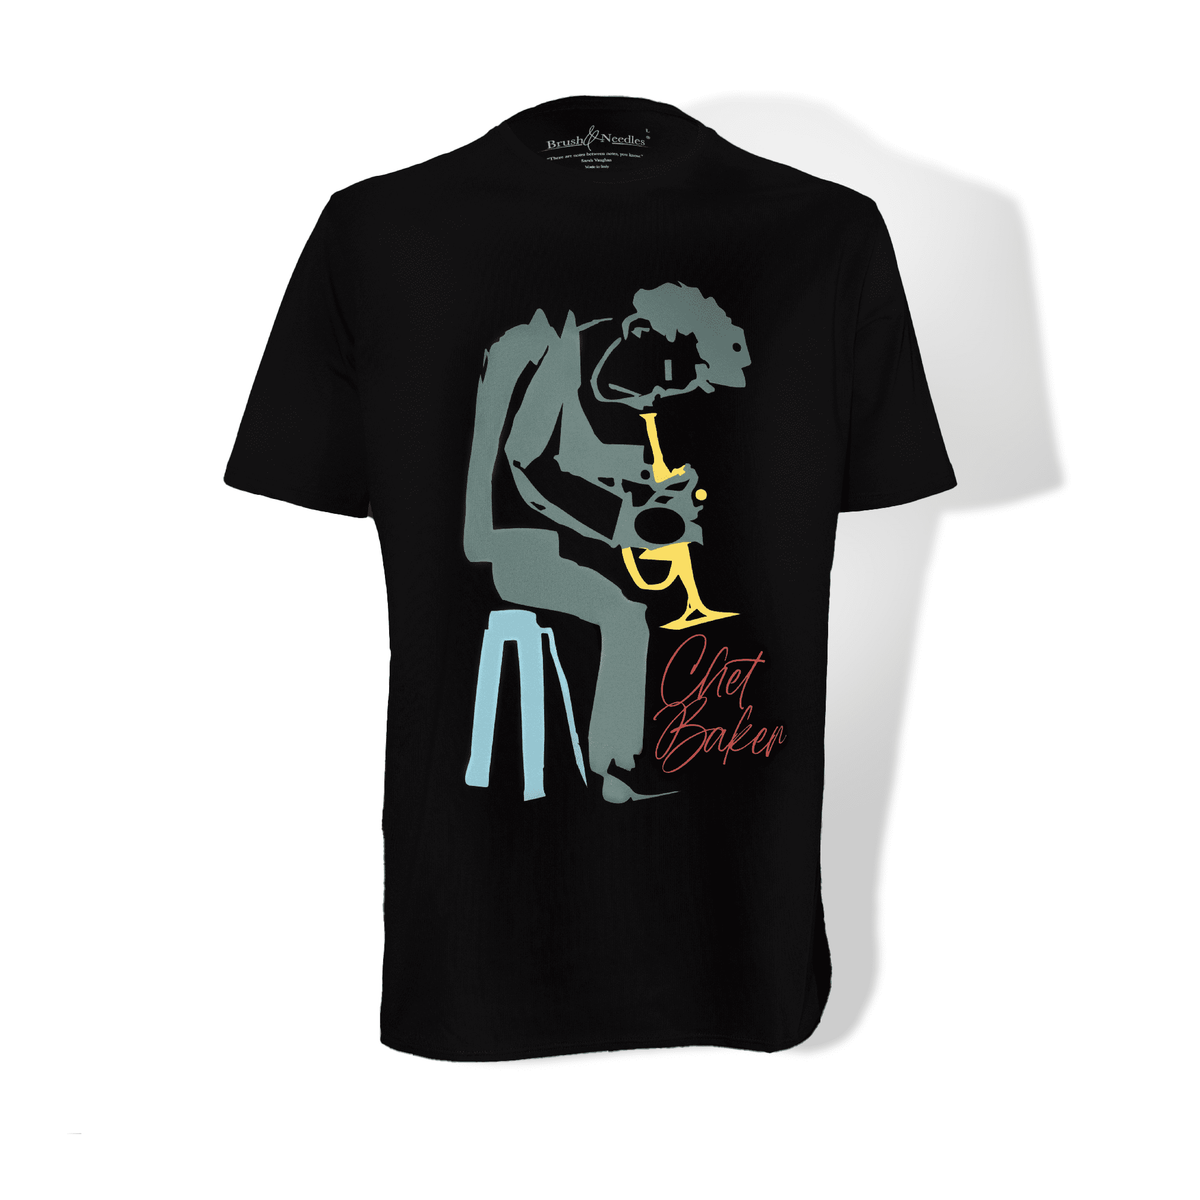 Chet Baker T-shirts